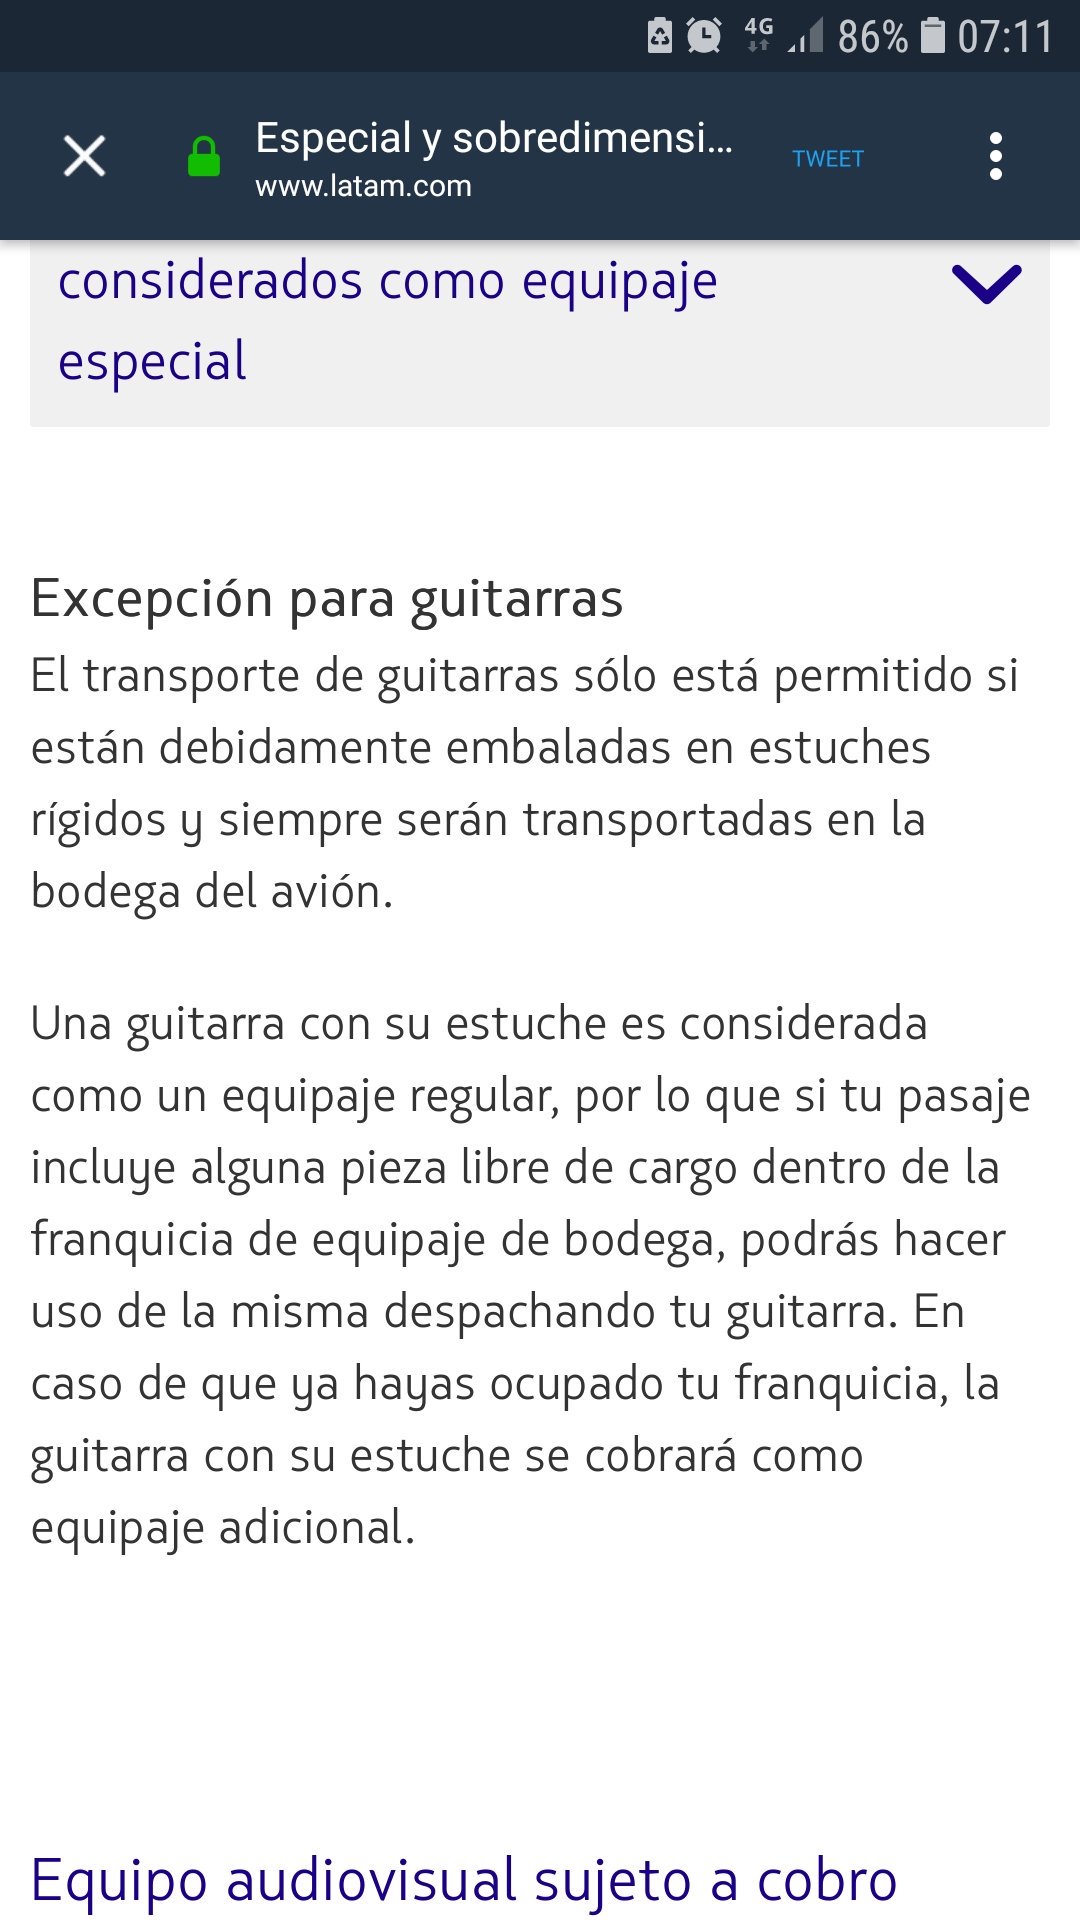 LATAM Ecuador Twitter: "@sergiosacoto Sergio, ciertos instrumentos musicales son equipaje especial y pueden ser transportados en la bodega de vuelos LATAM Airlines por un cobro adicional. Mas información, aquí: